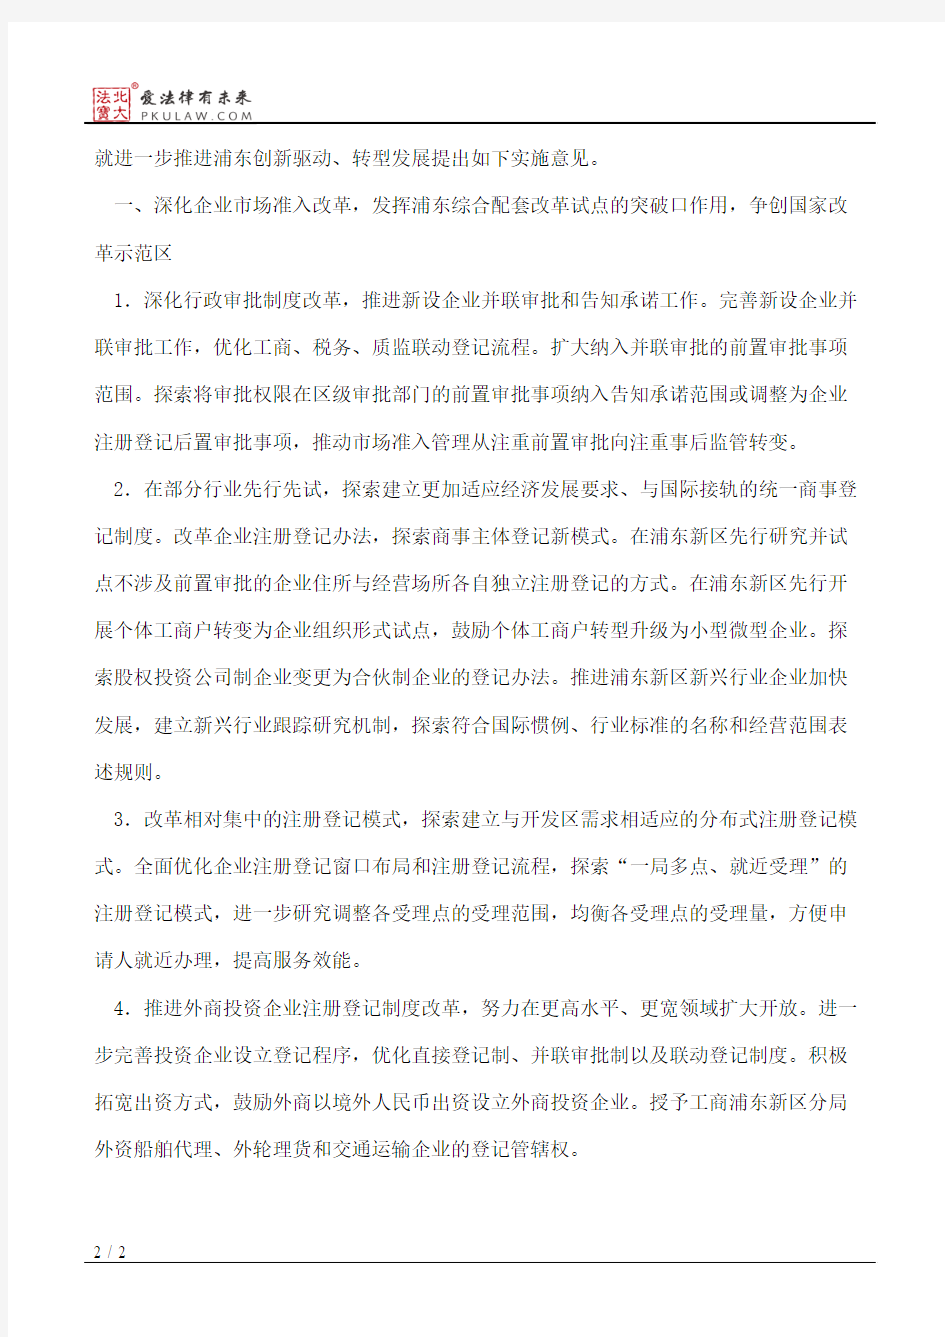 上海市工商行政管理局、上海市浦东新区人民政府关于深化工商行政